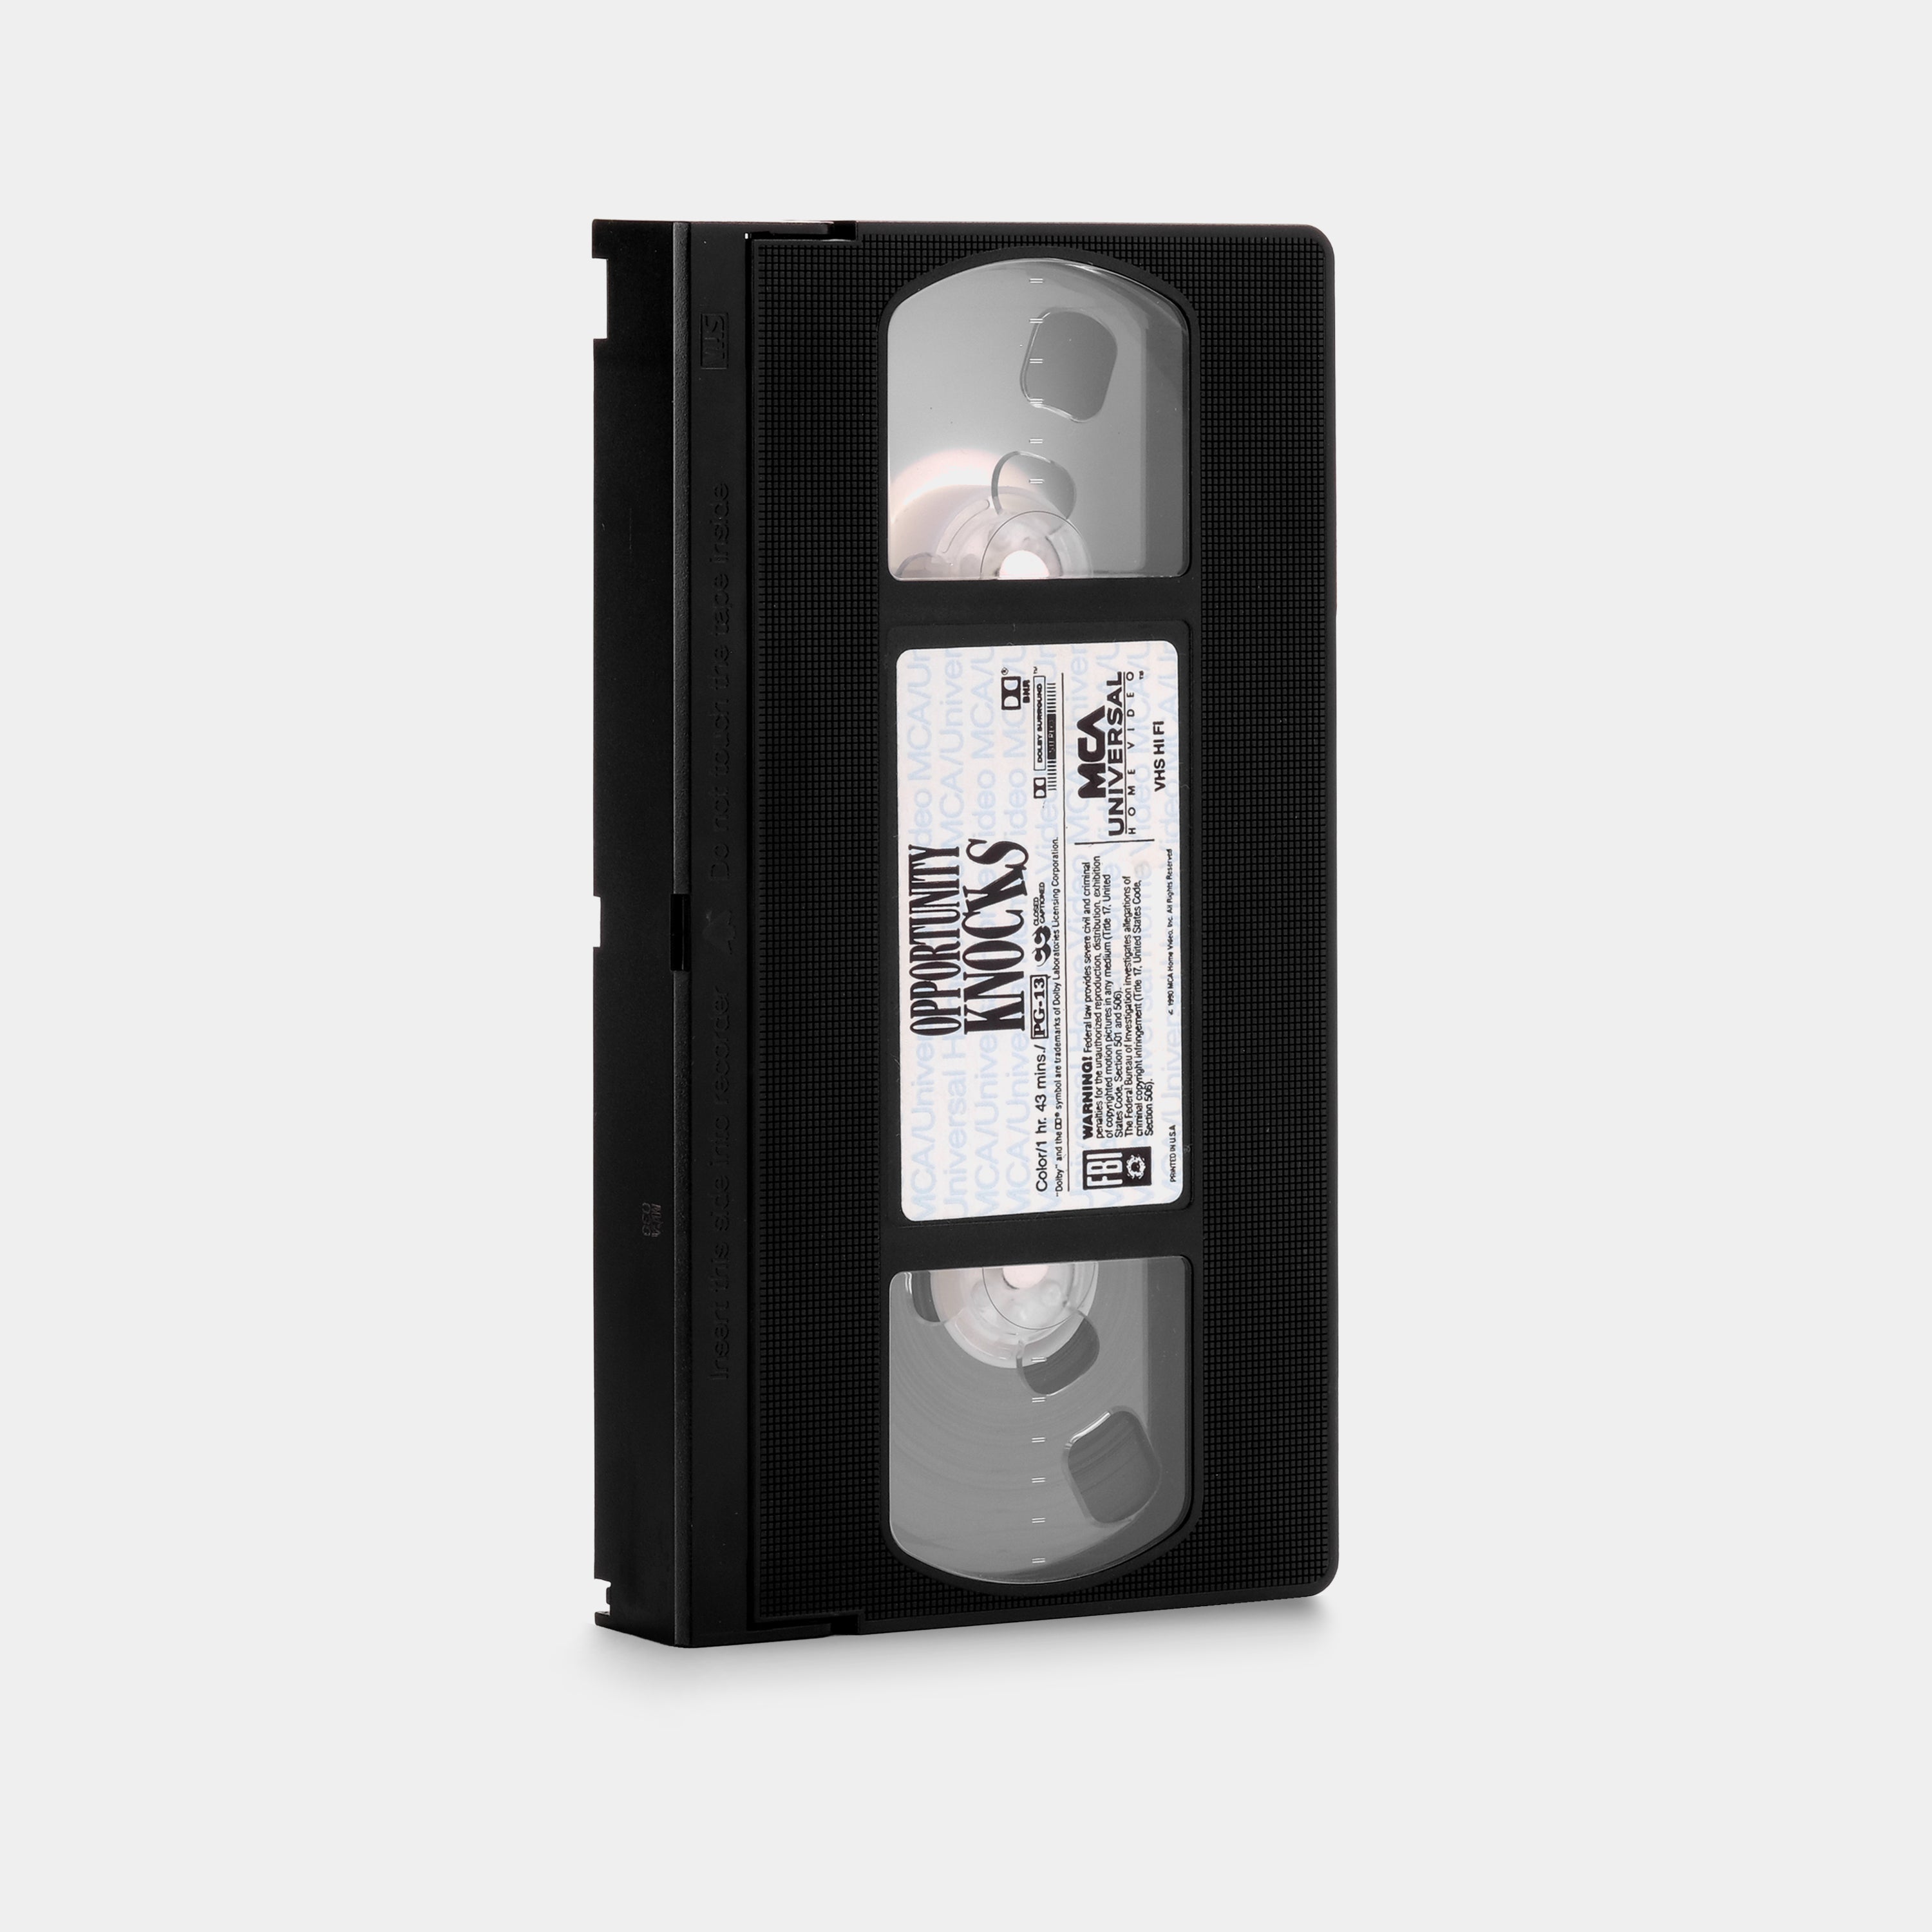 Opportunity Knocks VHS Tape